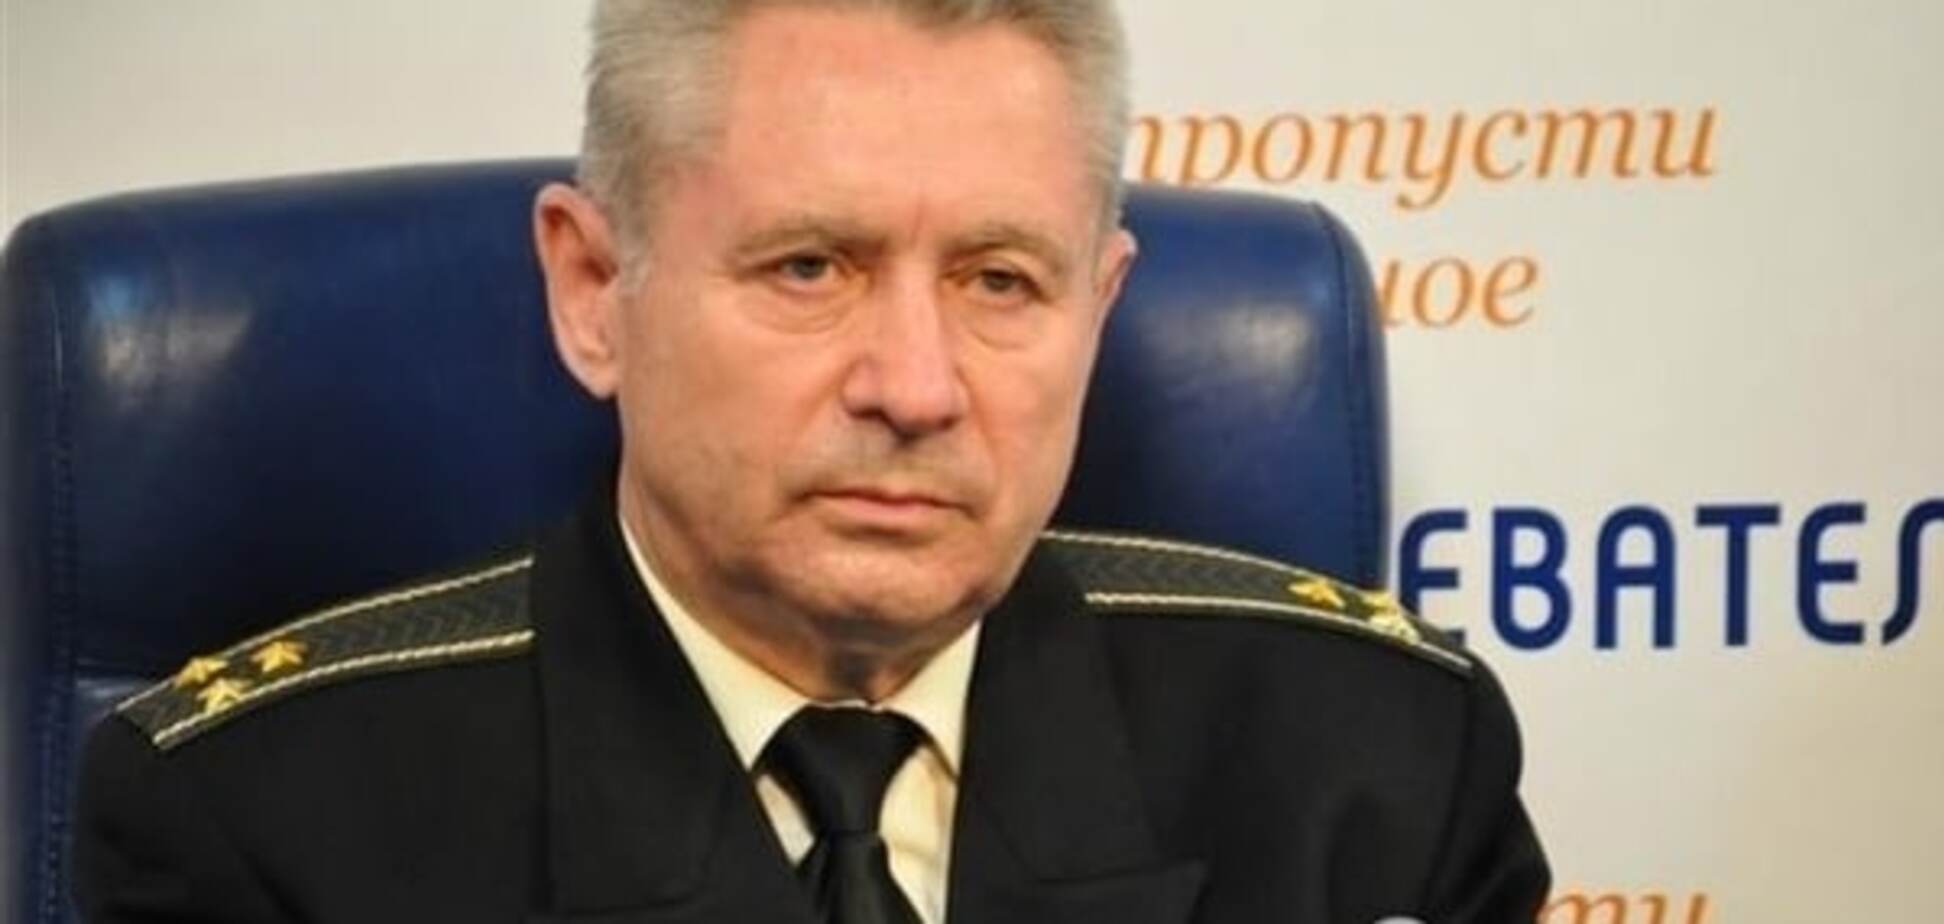 Опасное вооружение: Лупаков объяснил, зачем Россия модернизирует подлодки